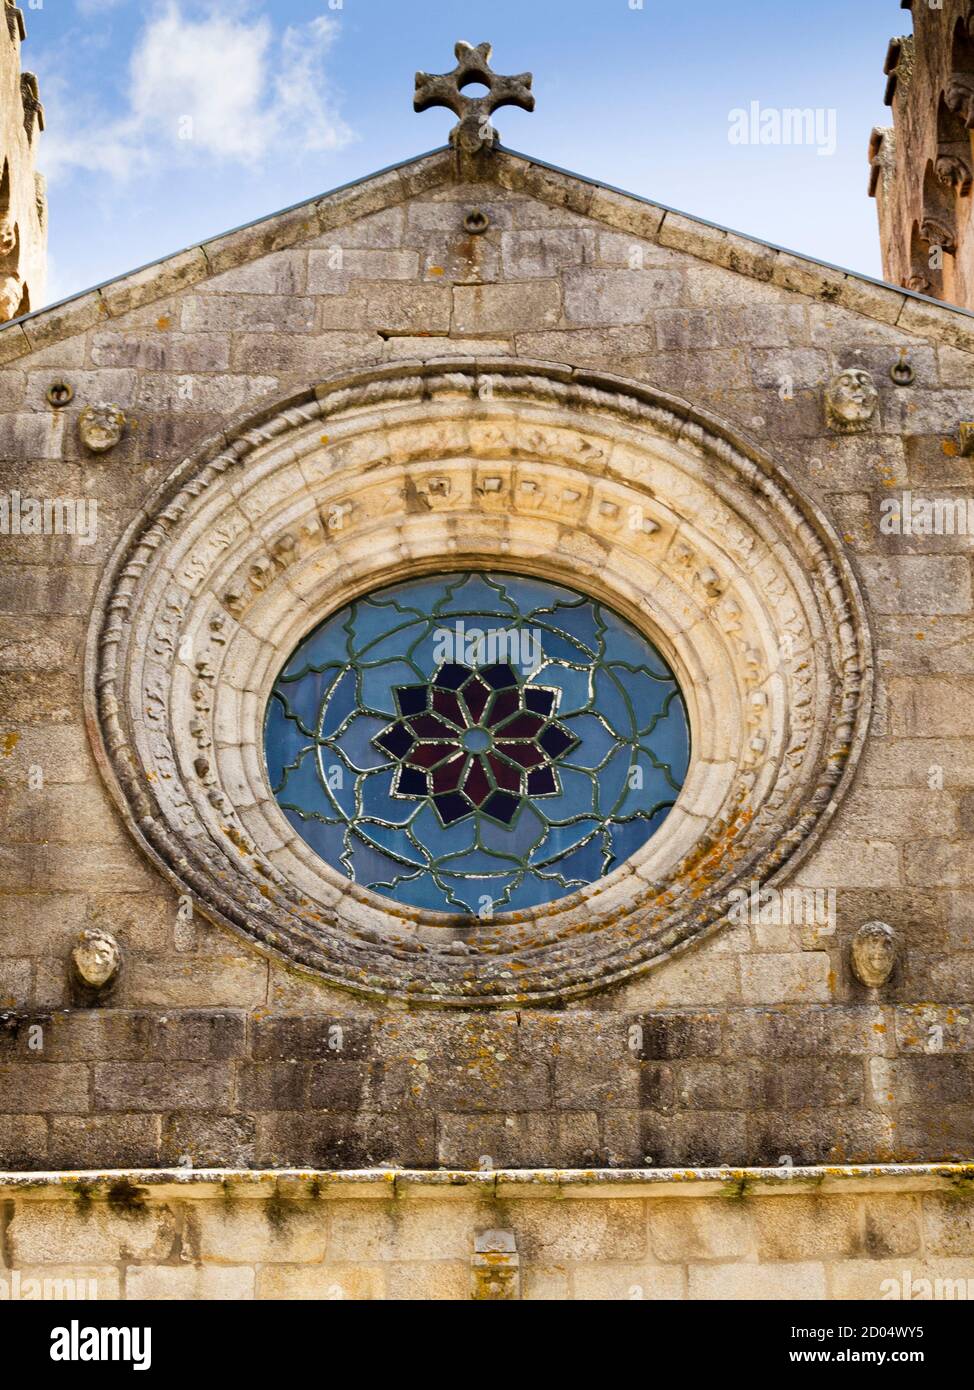 Détail architectural de la cathédrale Sainte-Marie la Grande et la rosacée, une construction gothique Viana do Castelo - Portugal - Europe Banque D'Images